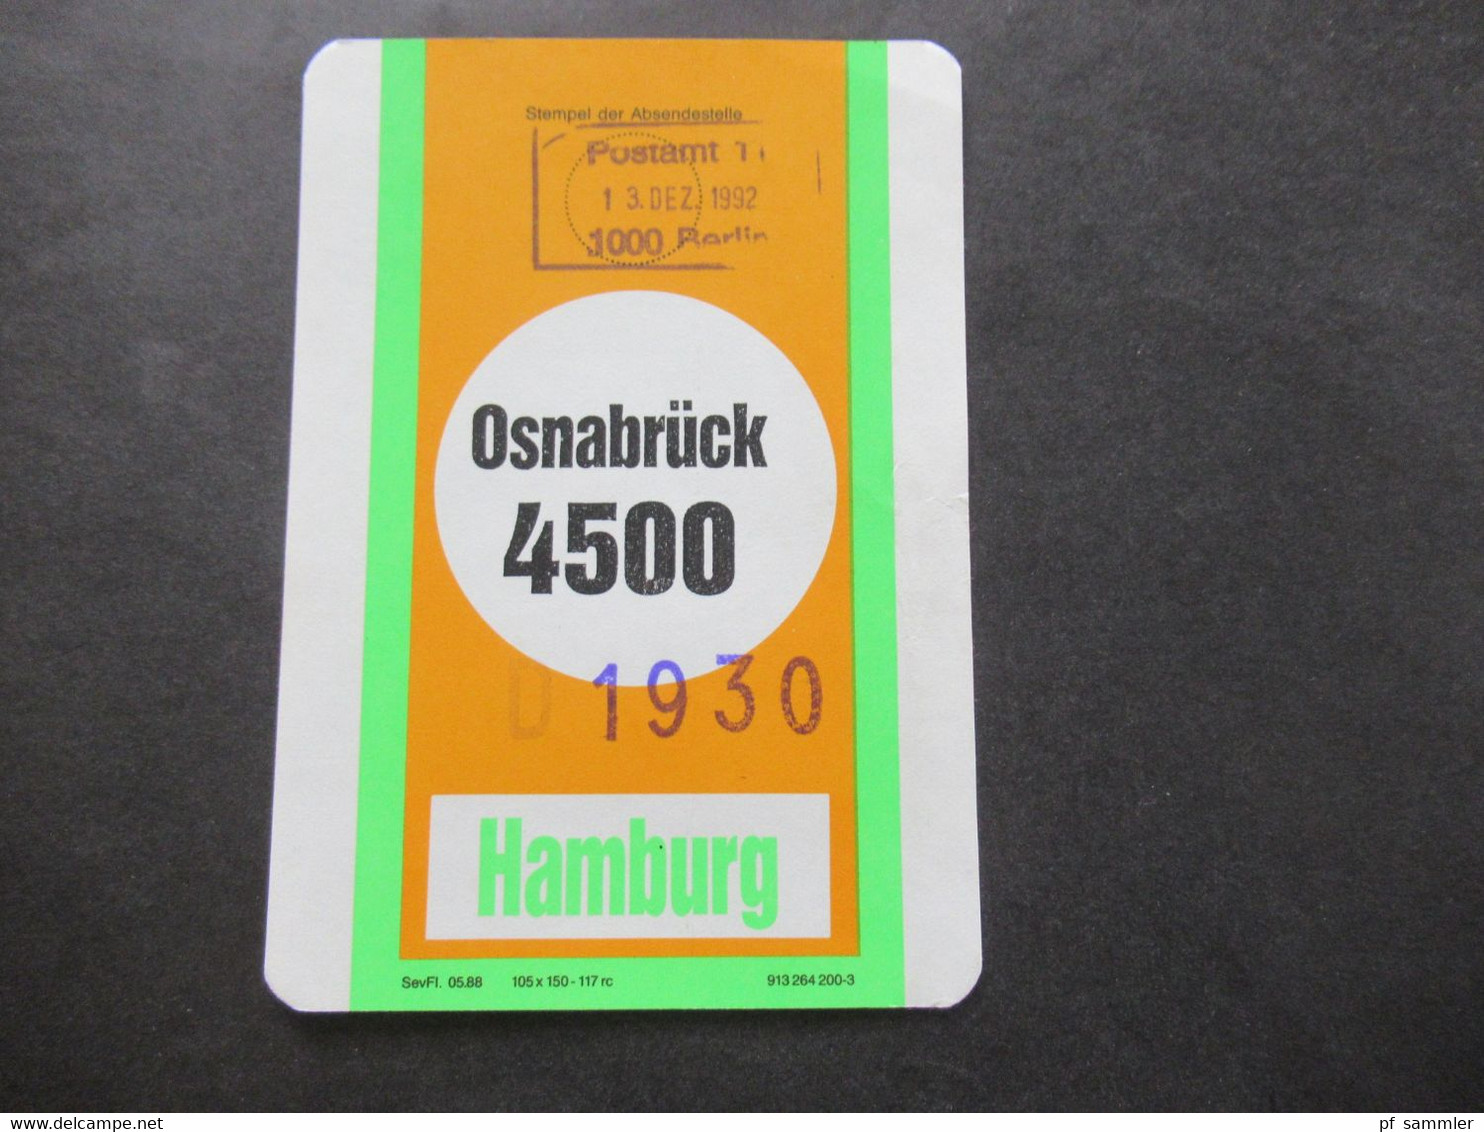 Berlin 1980/90er Jahre Bahnpost ?! Drucksachen für Auffangstelle / Hamburg 3, Osnabrück 4500 und FFM-HH